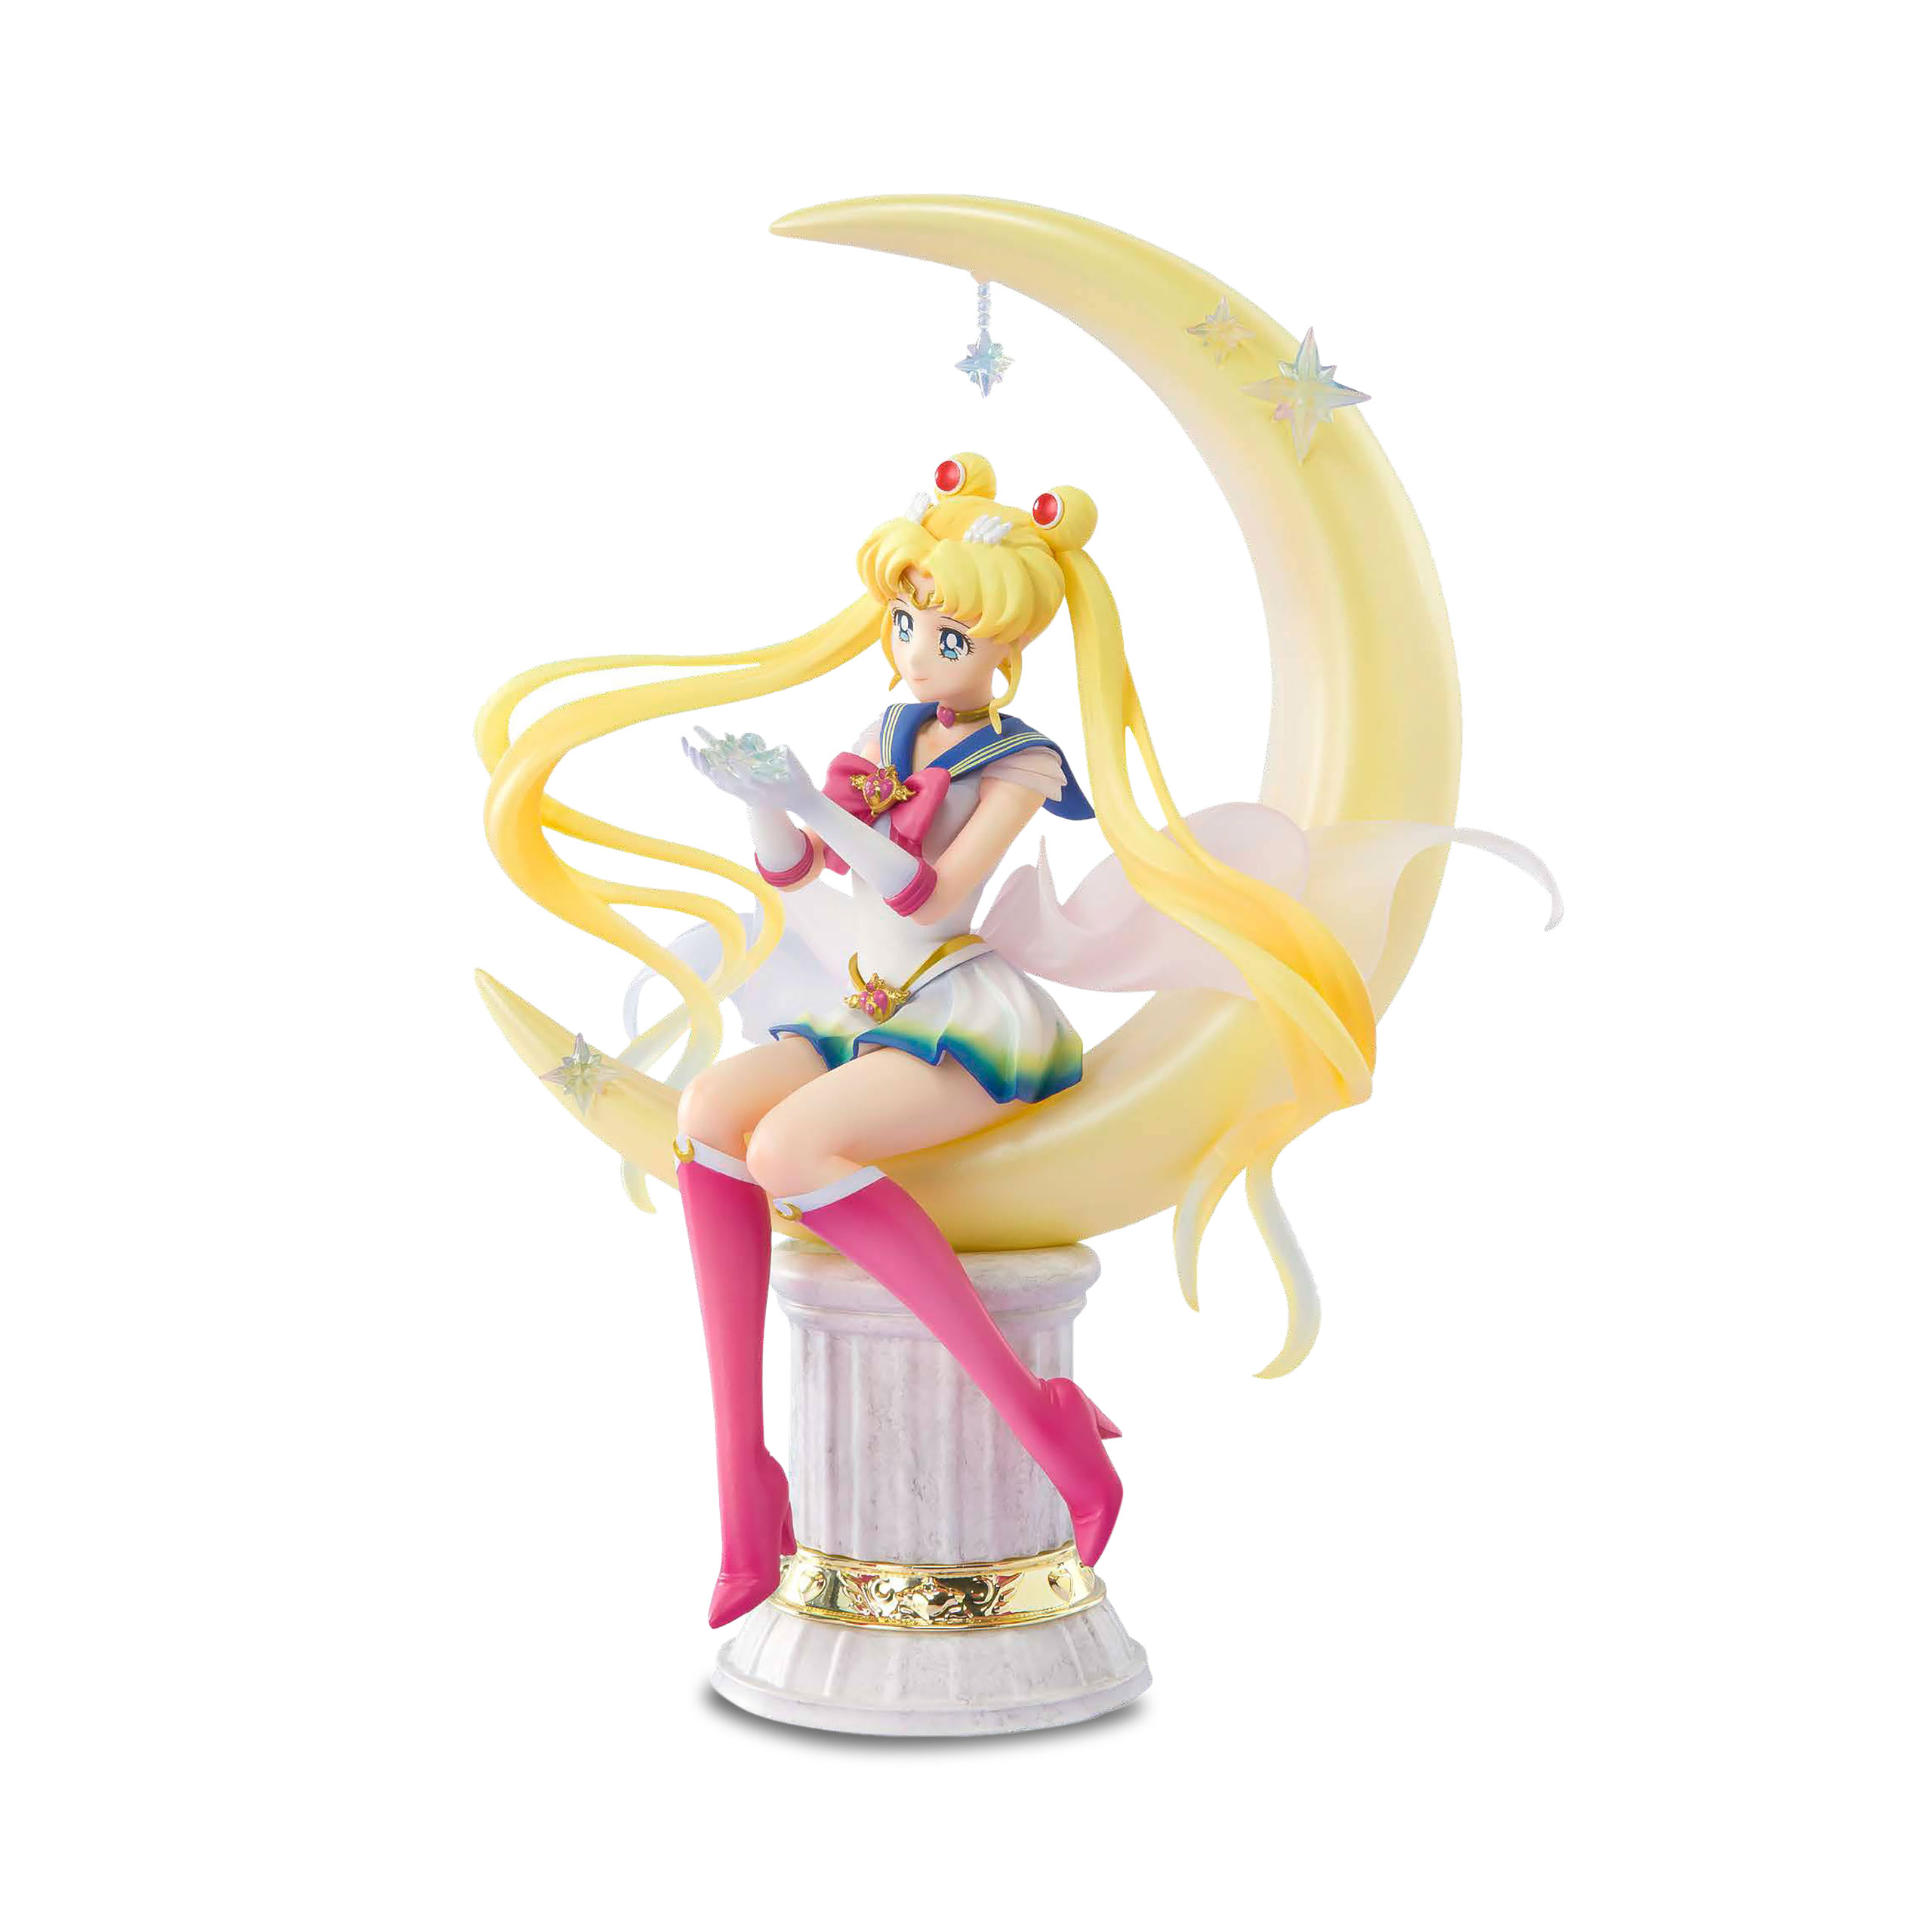 Sailor Moon - Bright Moon Figure